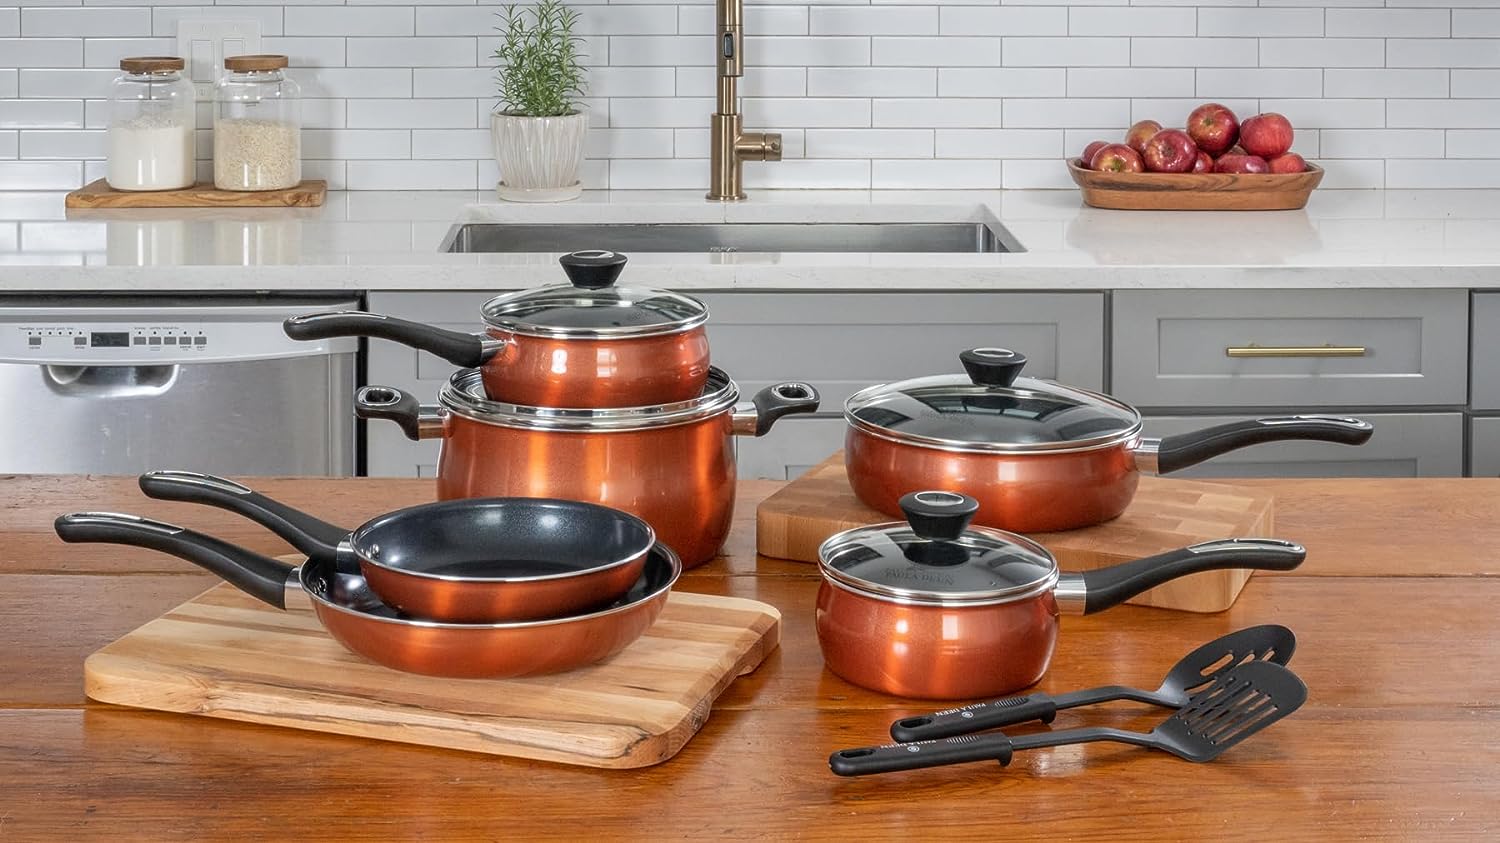 Paula Deen Signature Stainless Steel 12-Piece Cookware Set